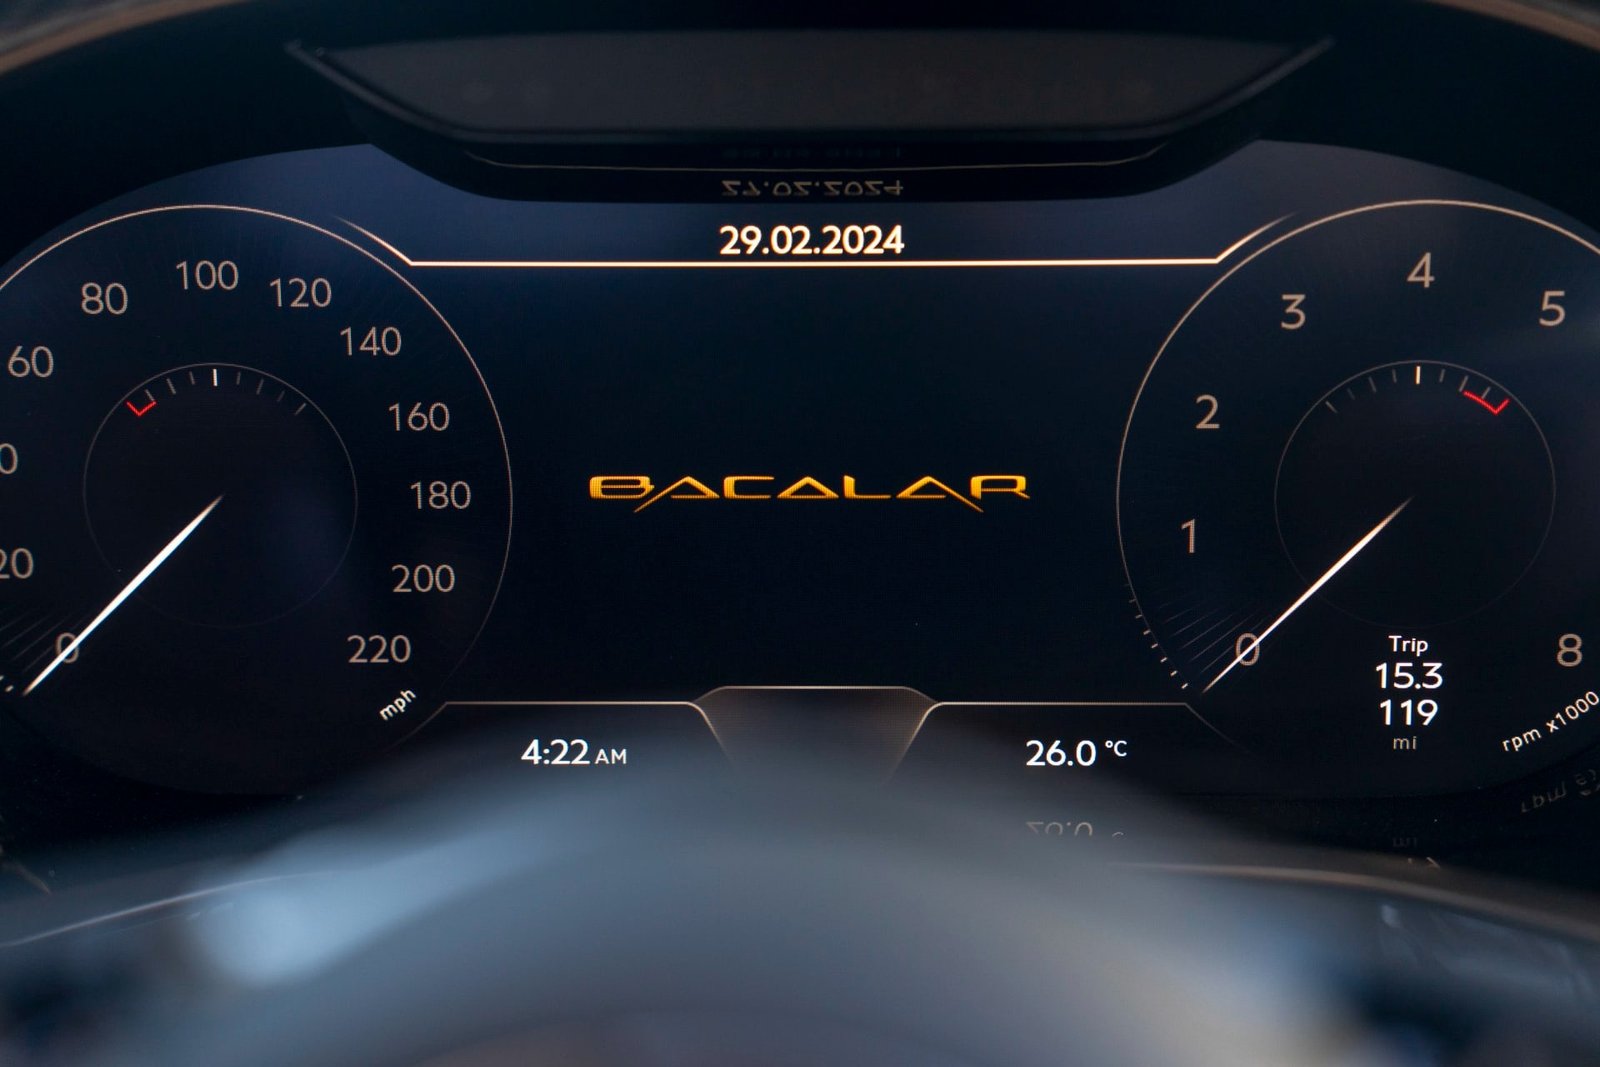 2022 Bentley Bacalar Roadster For Sale (26)